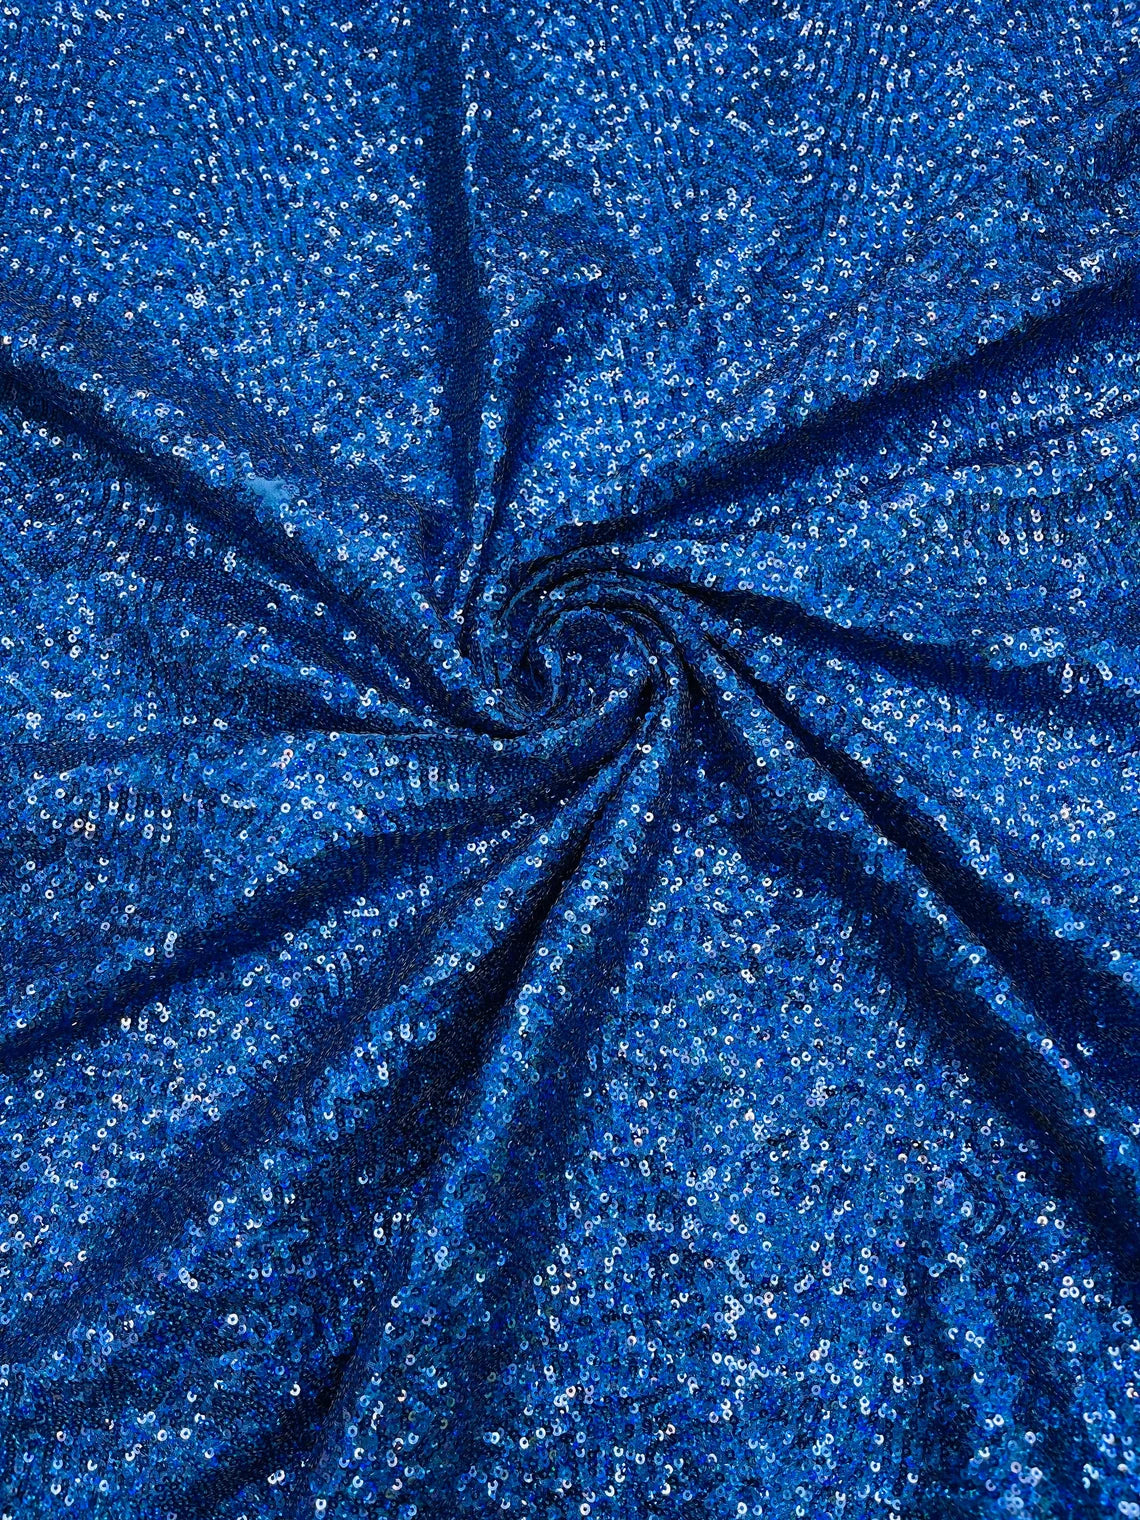 Mini Glitz Sequins on Milliskin - Royal Blue - 4 Way Stretch Milliskin Stretch Spandex Fabric by Yard